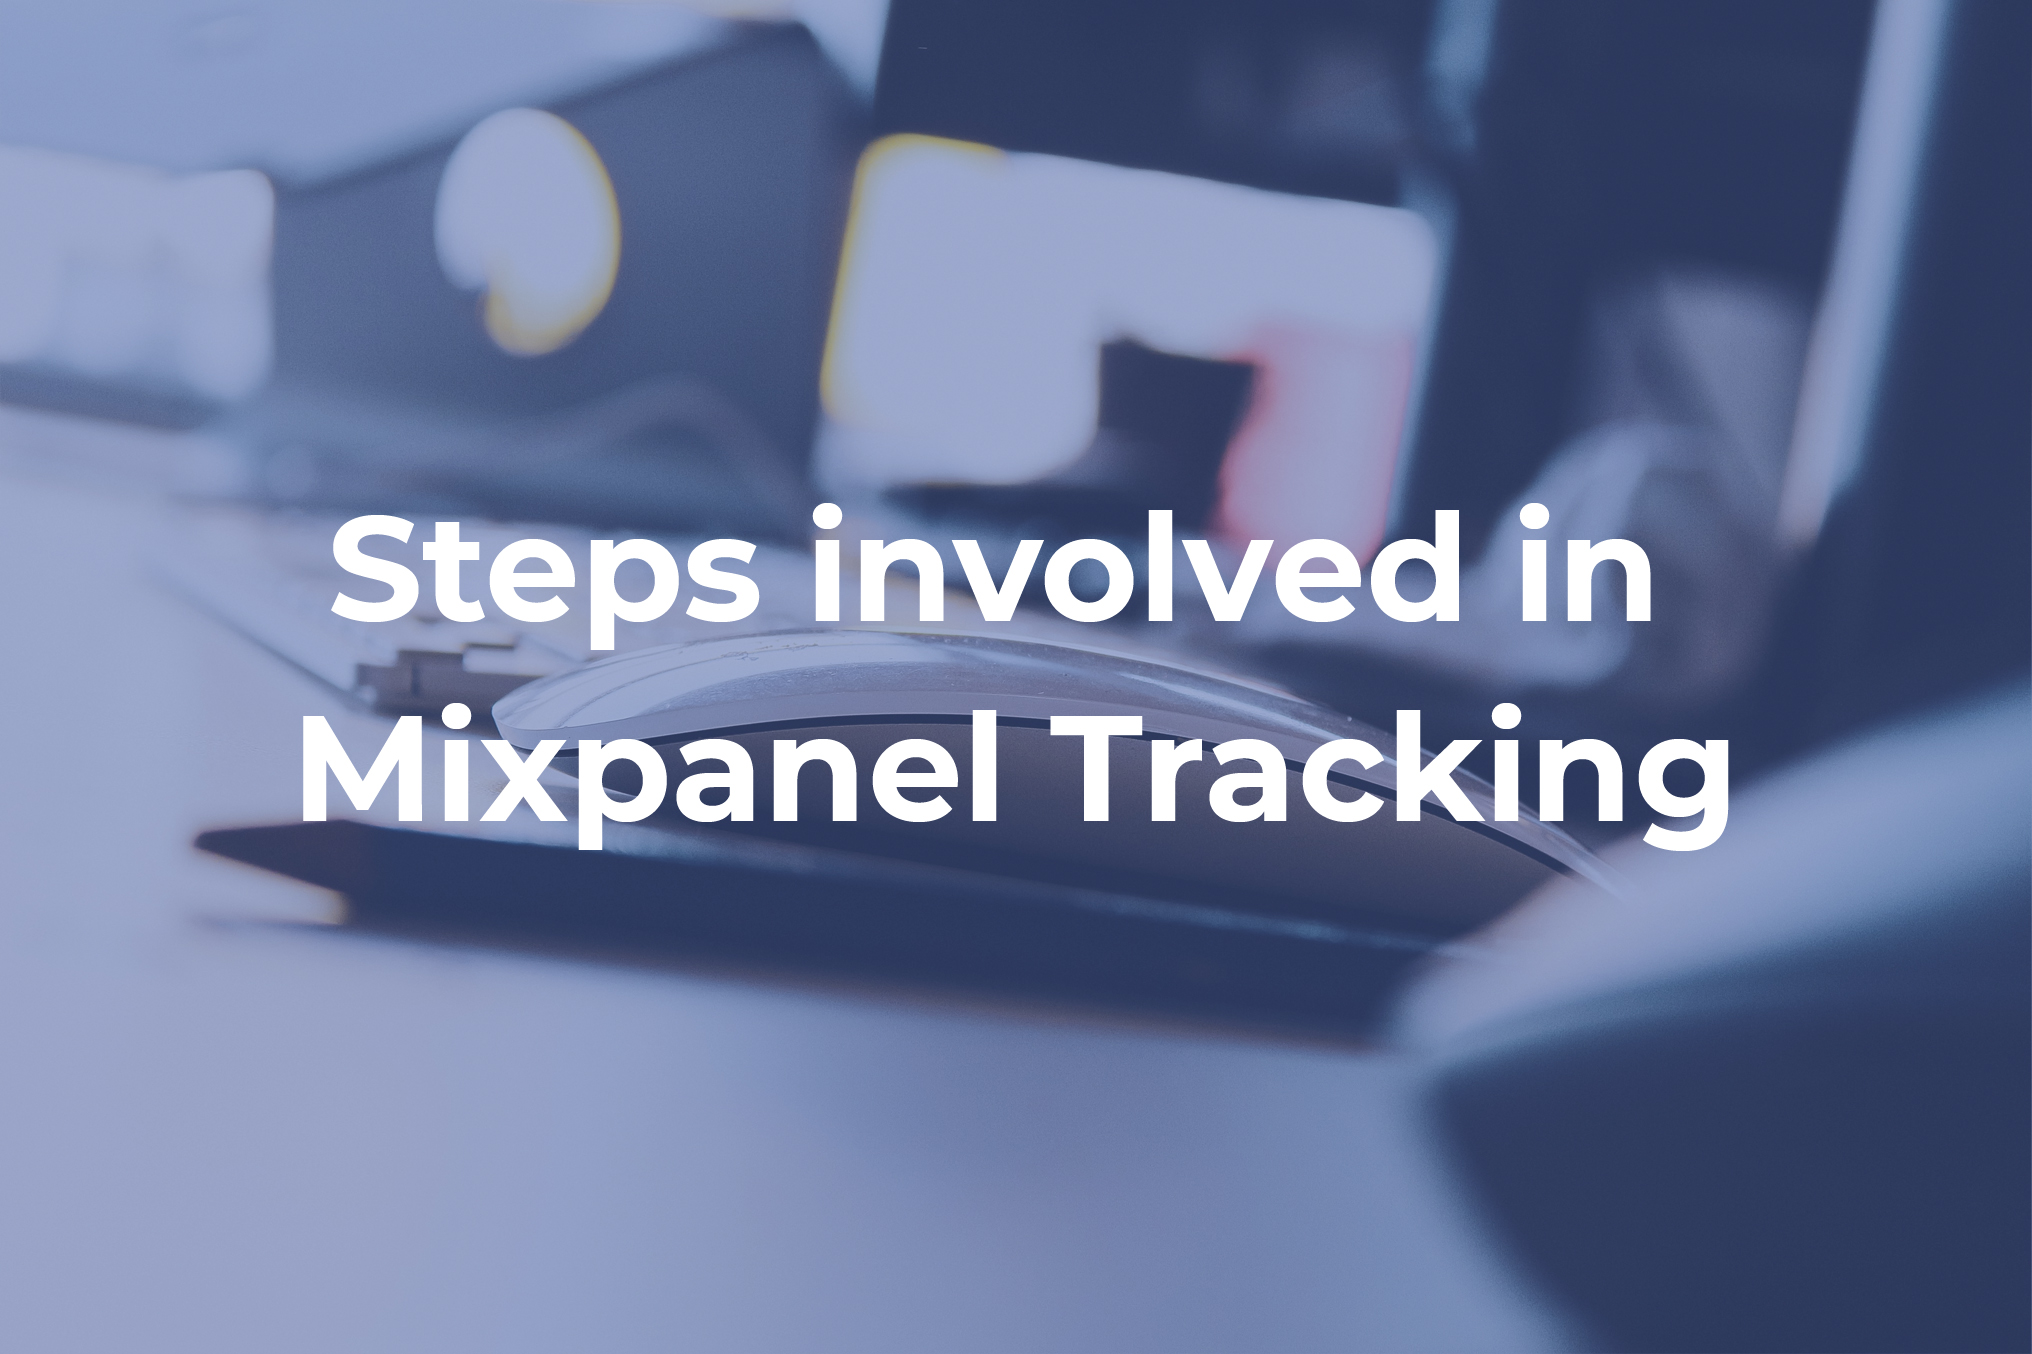 Mixpanel tracking